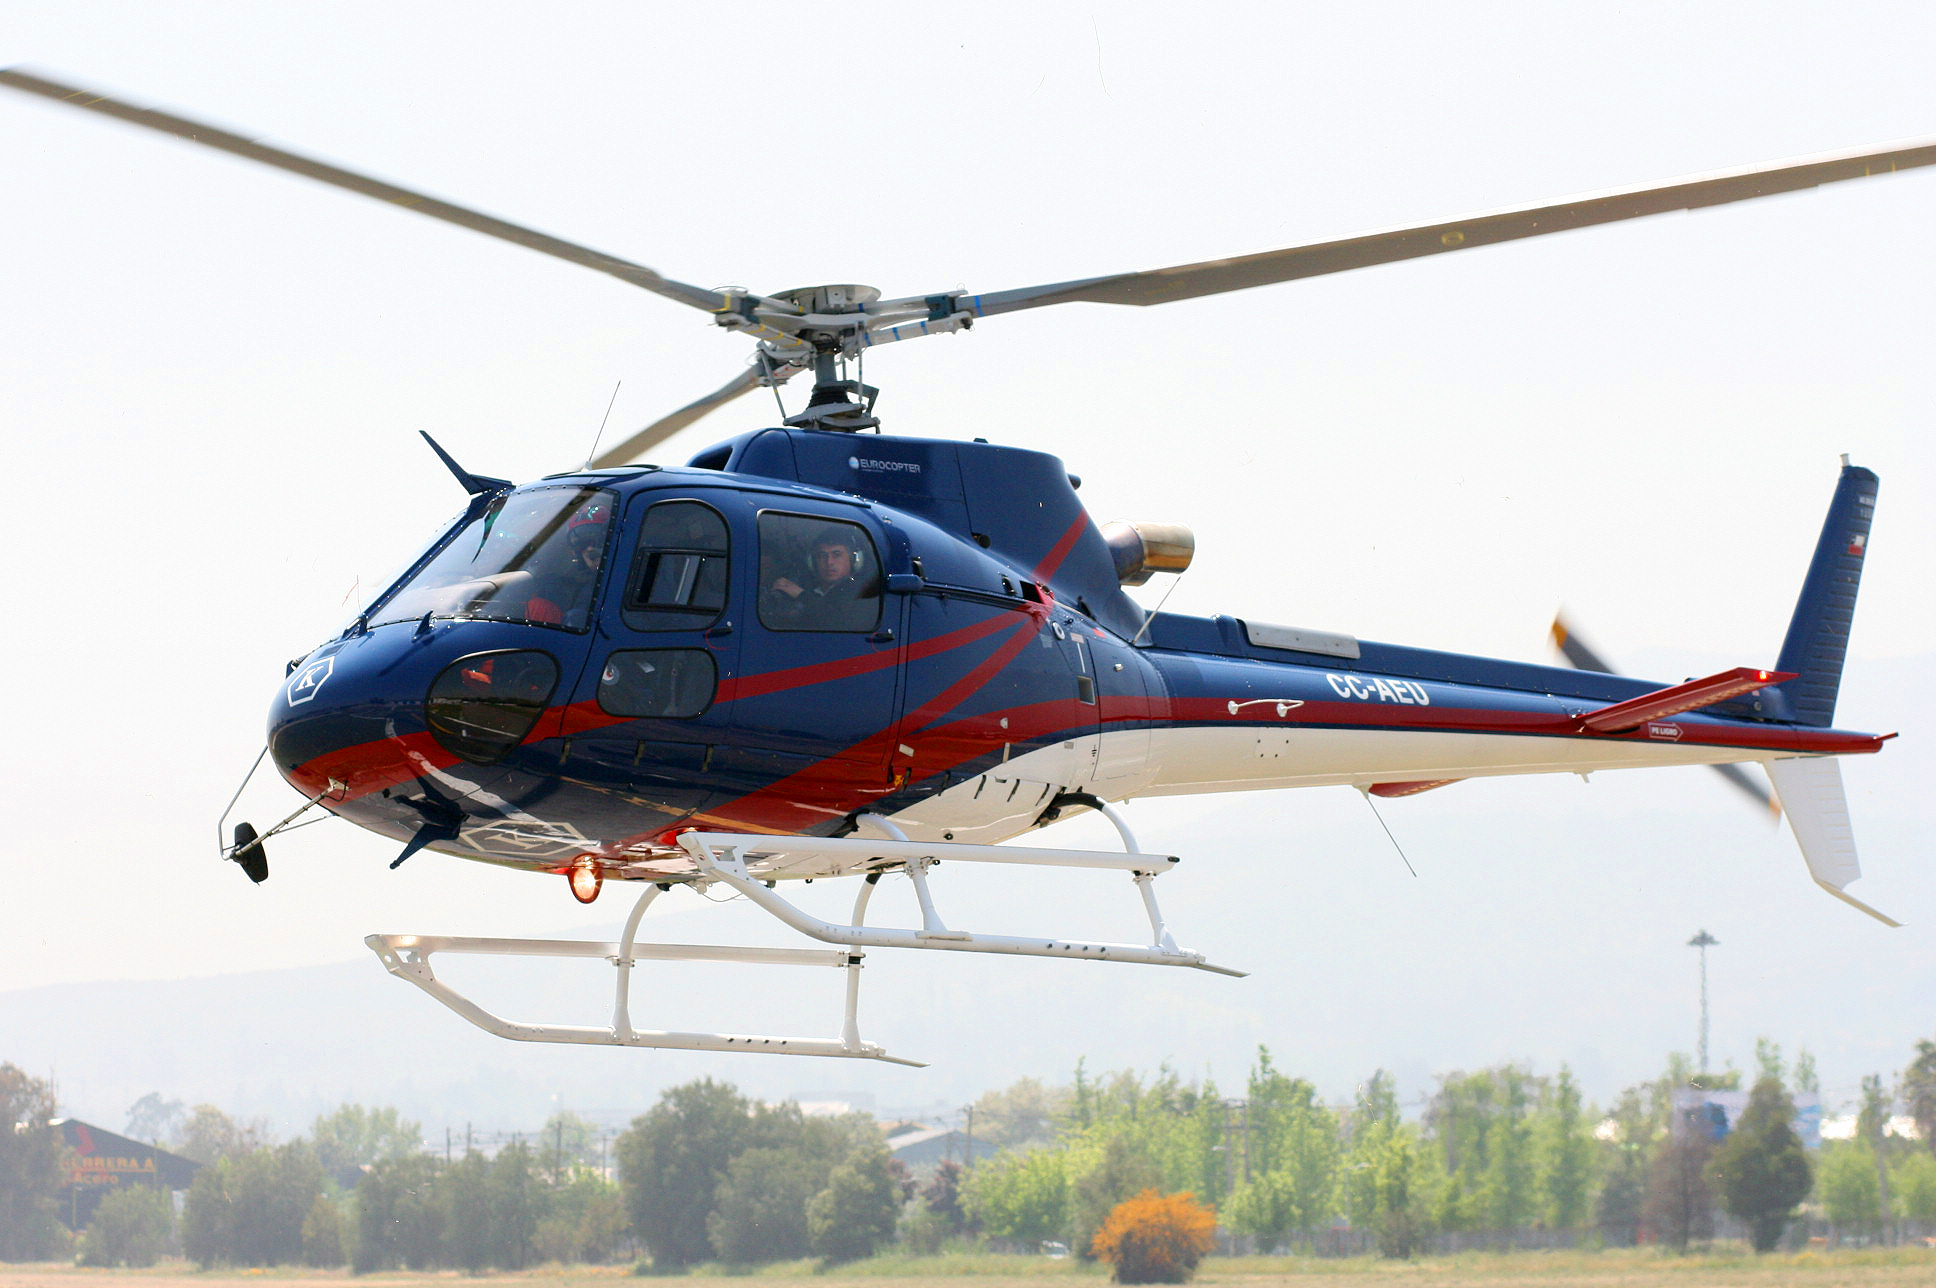 Смертельная авиакатастрофа в России: вертолет AS-350 разбился возле Костромы, все на борту погибли - СМИ 